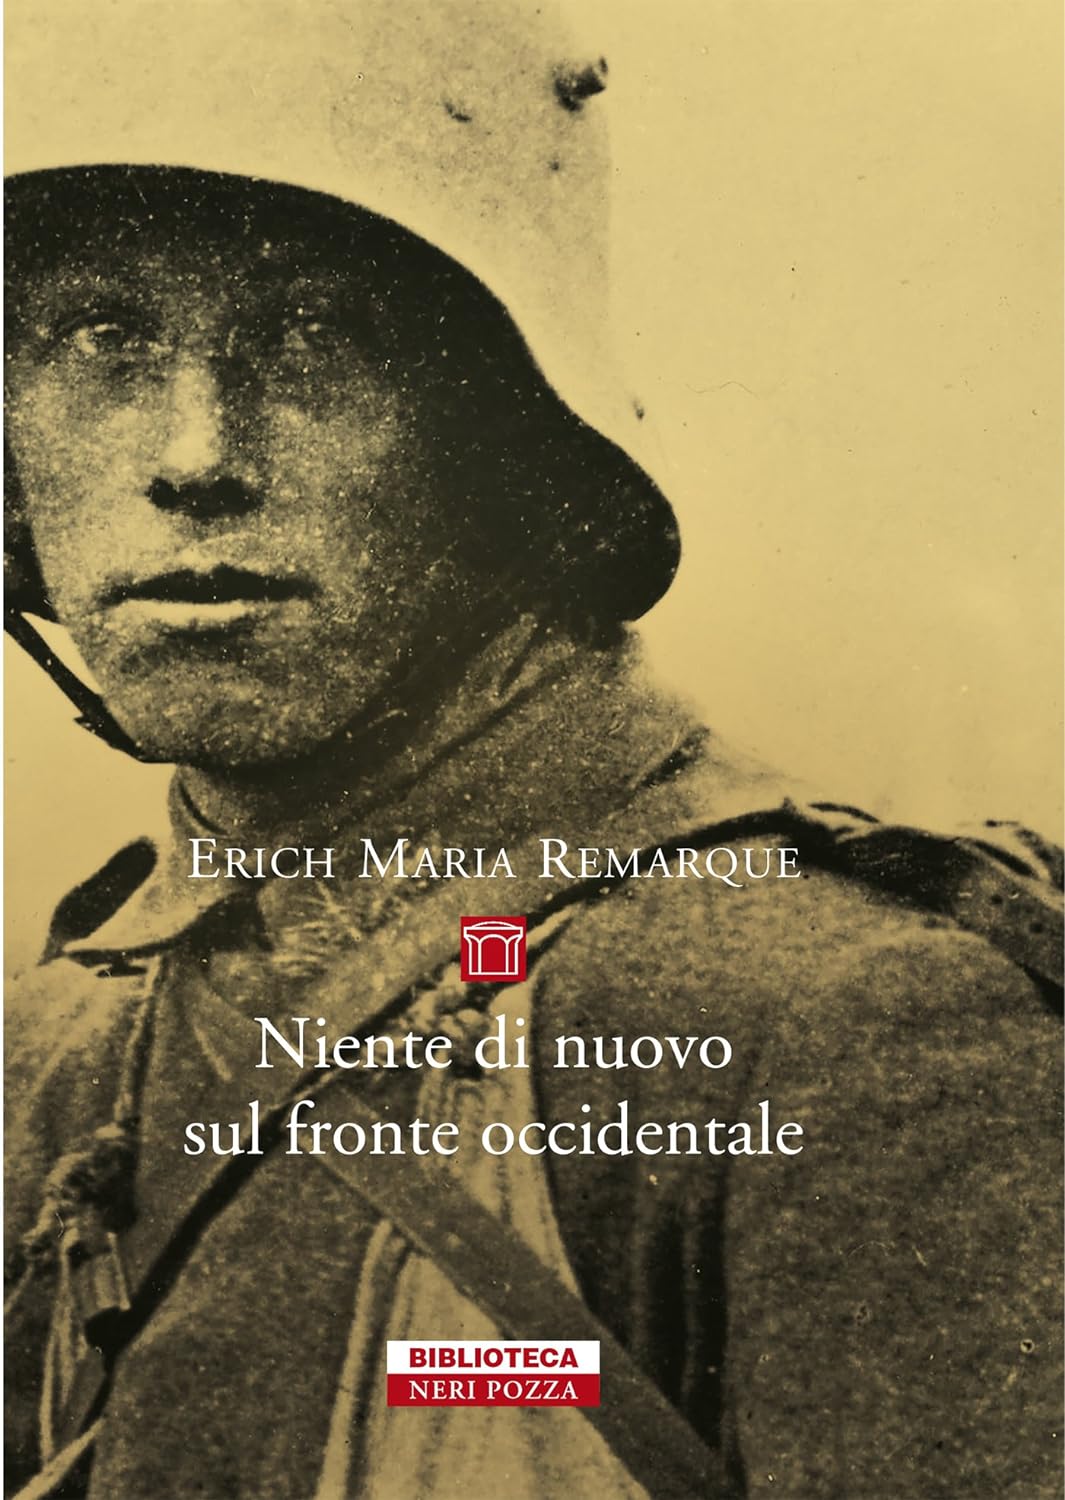 Erich Maria Remarque: Niente di nuovo sul fronte occidentale (EBook, Italiano language, 2016, Neri Pozza)